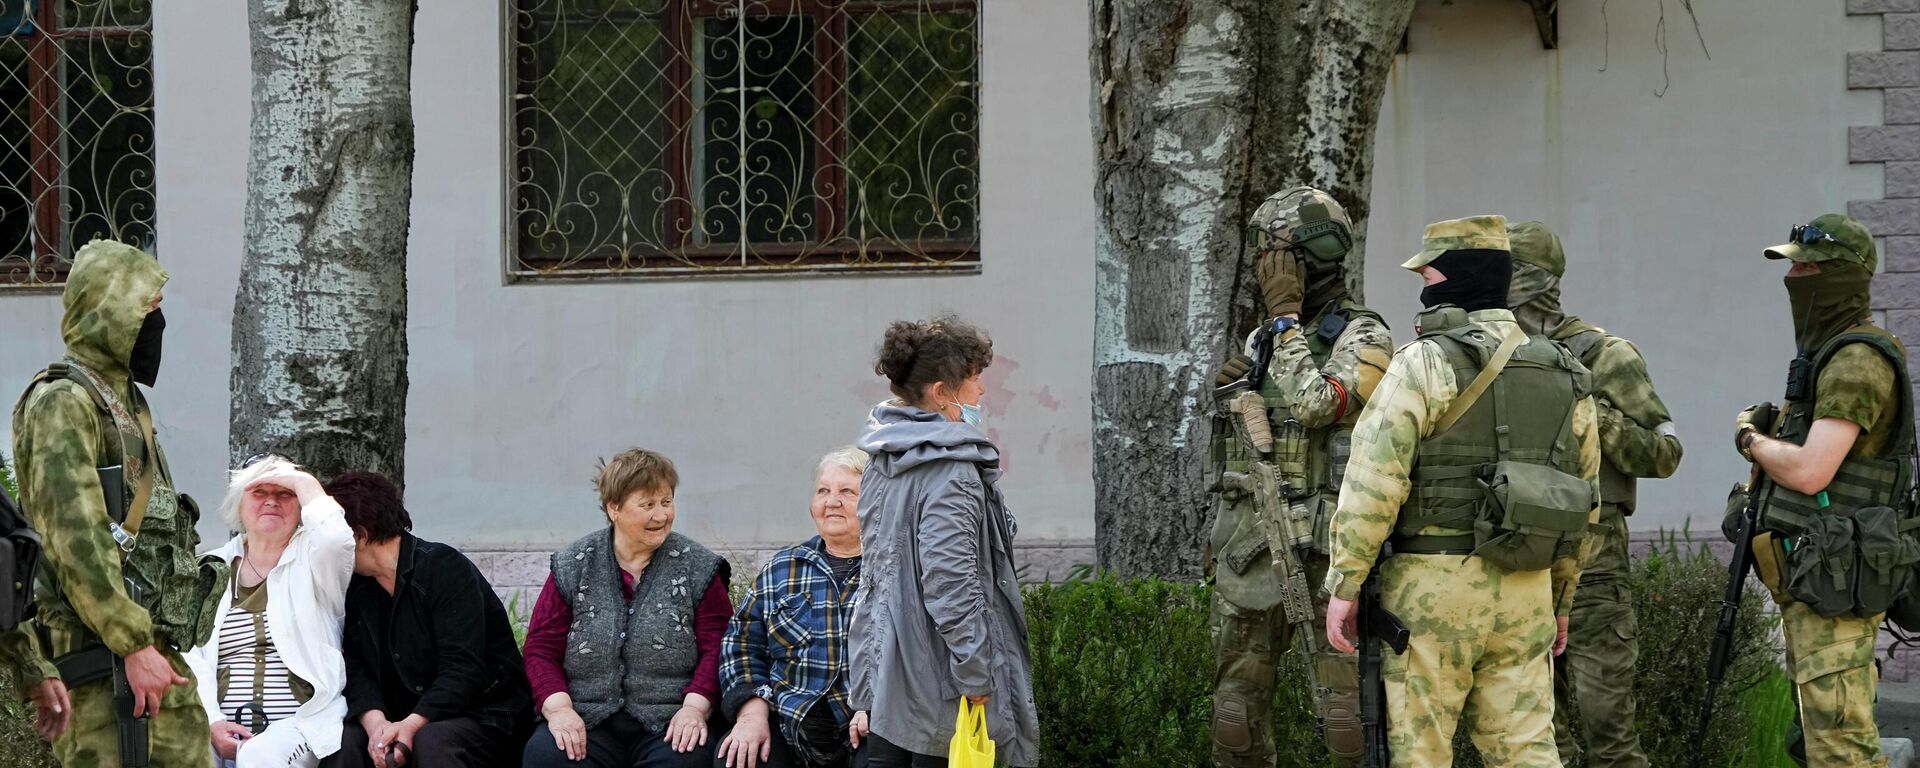 كبار السن من السكان المحليين يتحدثون إلى مجموعة من الجنود الروس في خيرسون، منطقة خيرسون، جنوب أوكرانيا، 20 مايو 2022. - سبوتنيك عربي, 1920, 07.06.2022